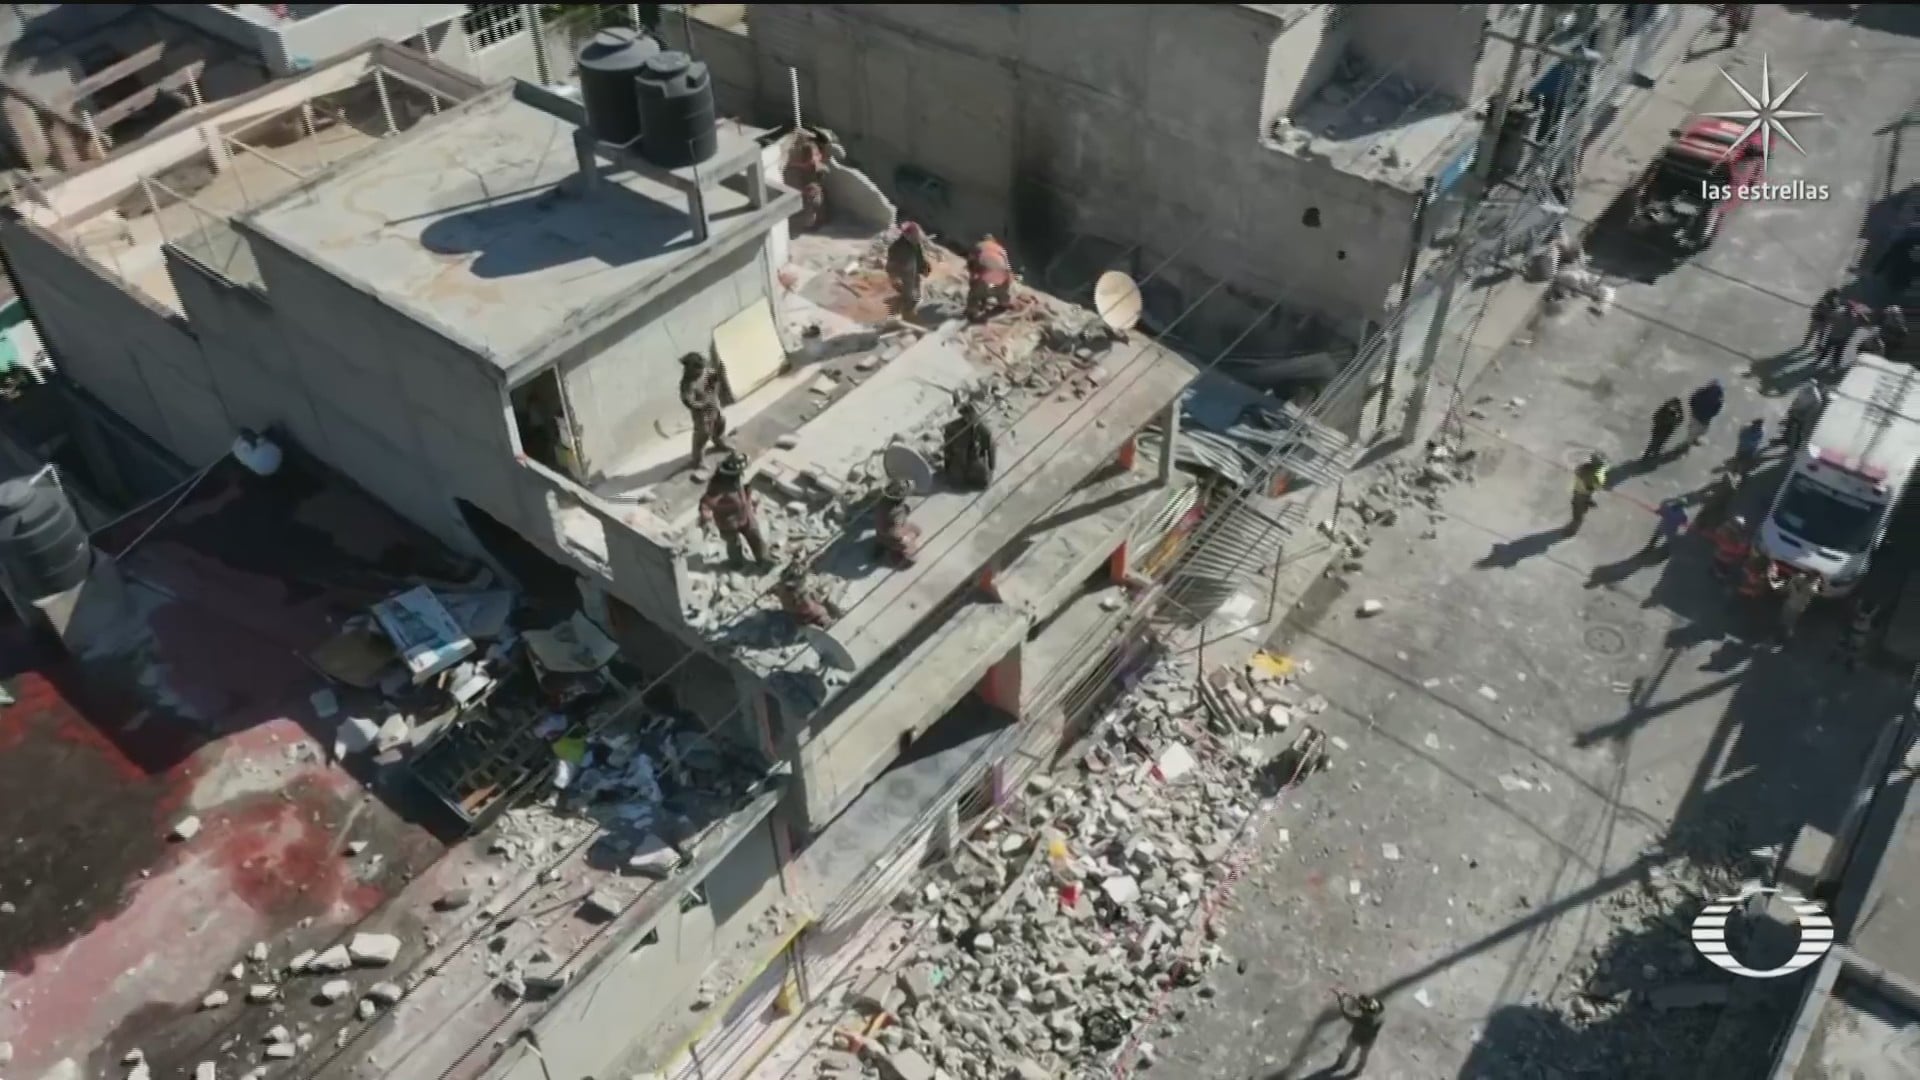 explosion en una vivienda de ecatepec deja 6 personas lesionadas